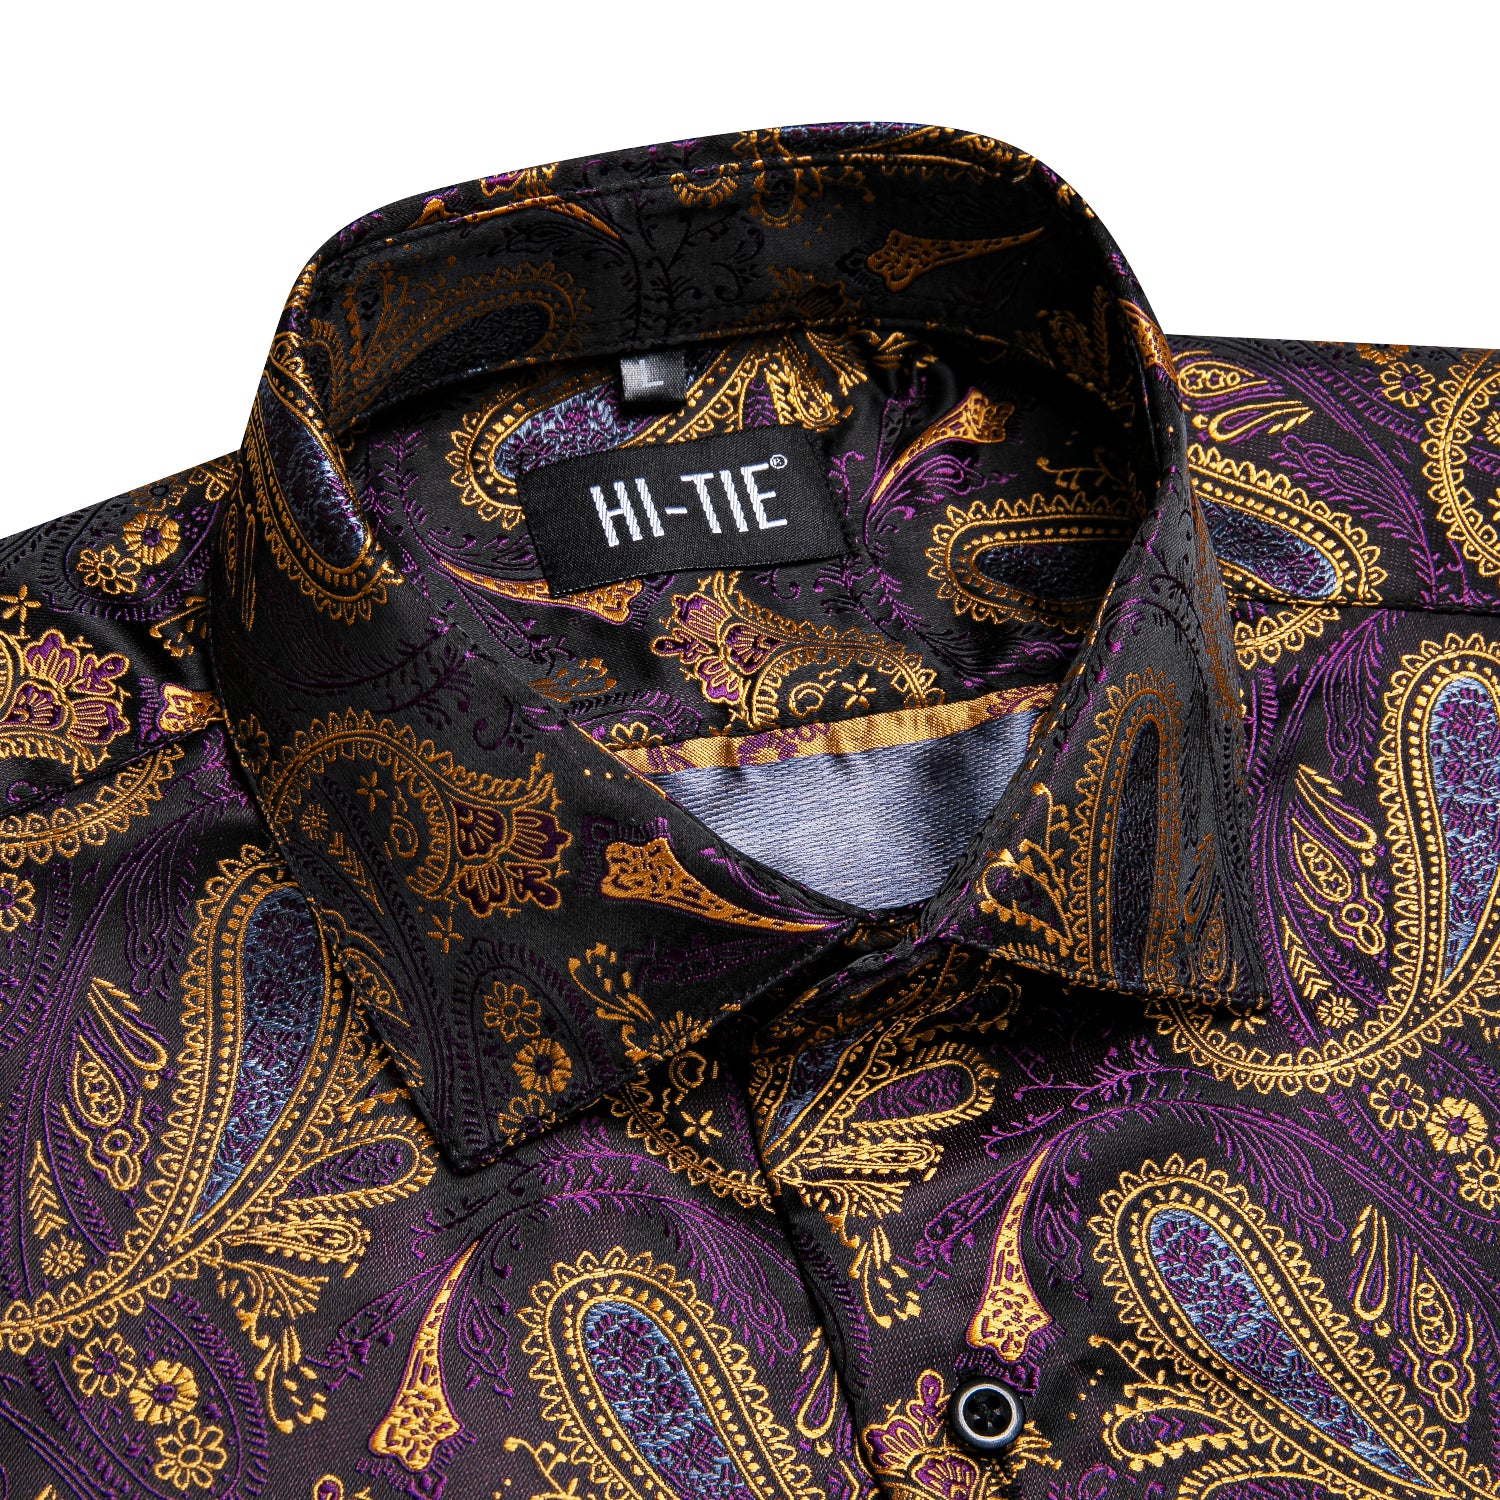 New Golden Purple Paisley Silk Men's Short Sleeve Shirt